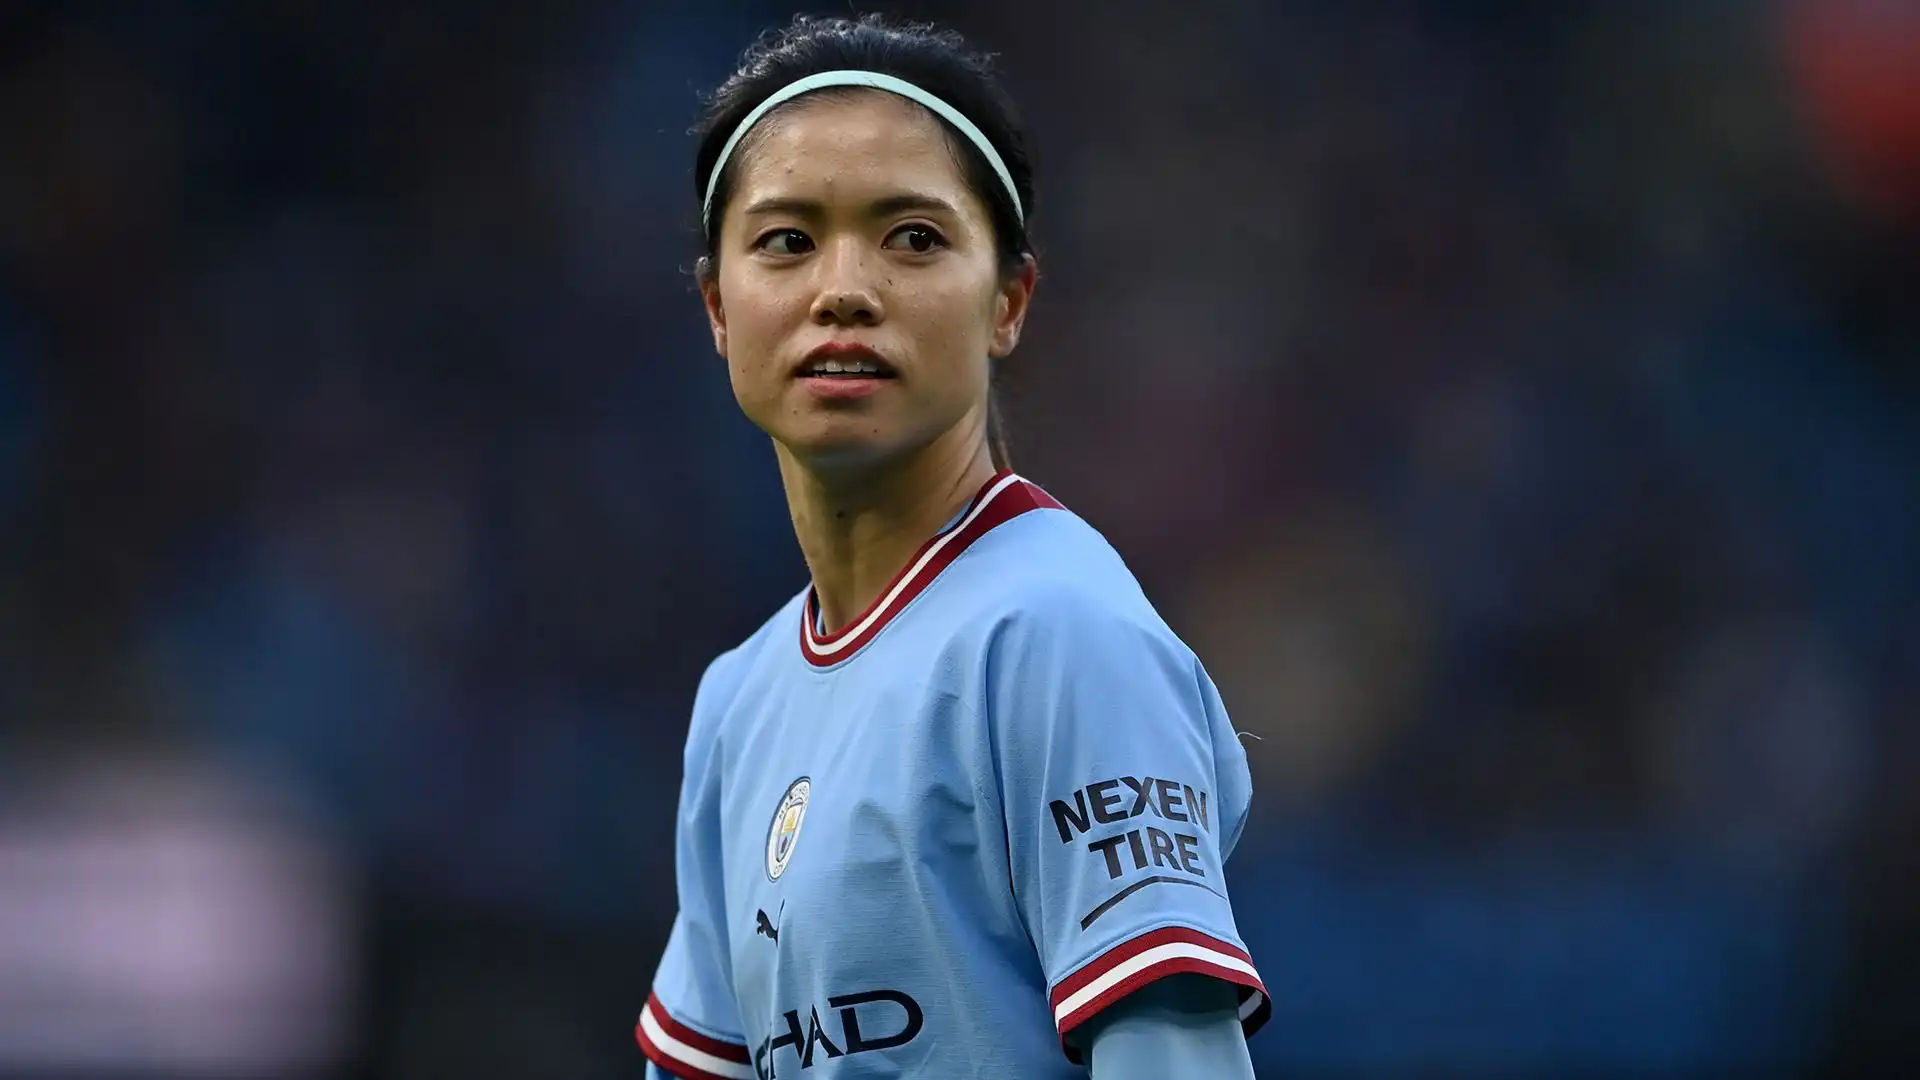 Dal 2022, invece, Yui gioca nel Manchester City